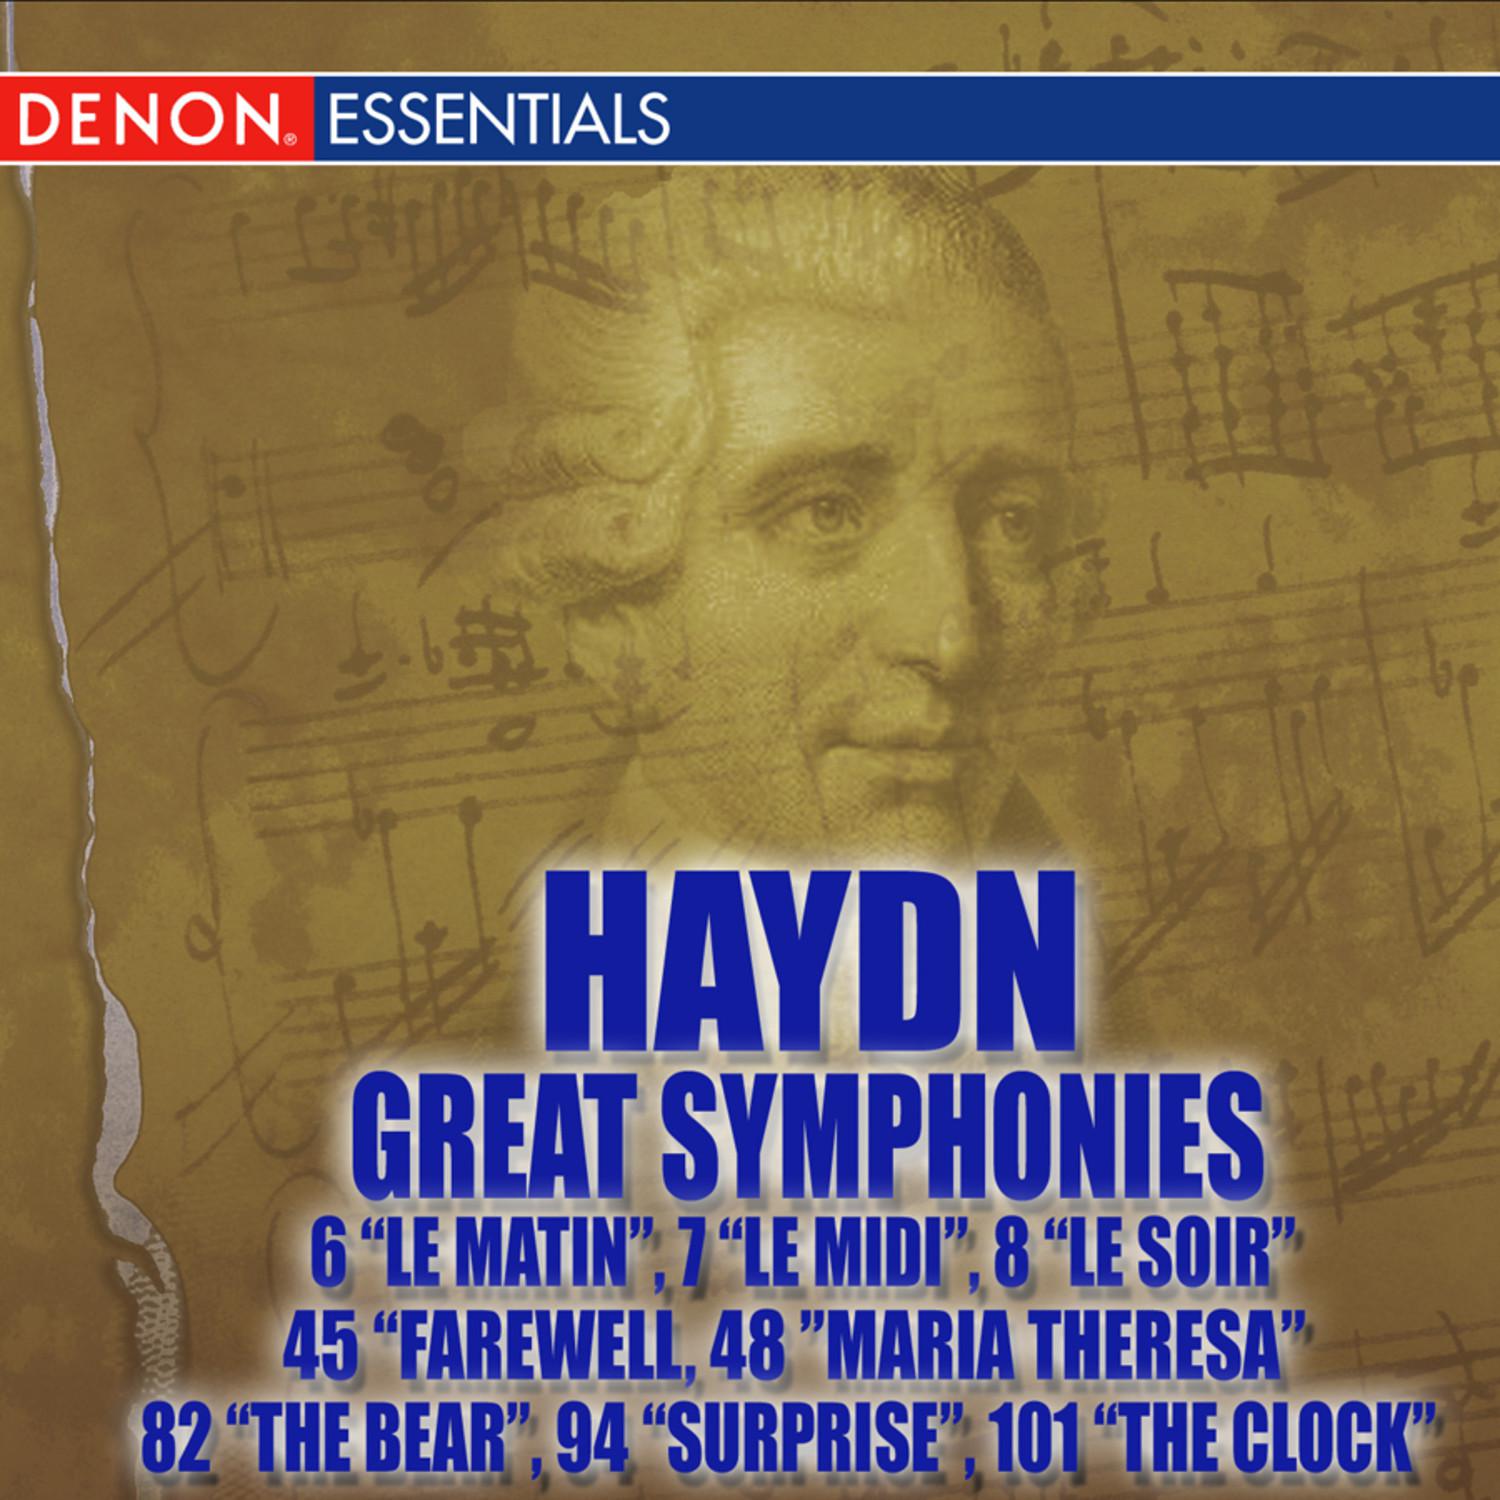 Haydn Symphony No. 7 in C Major "Le midi": II. Recitativo: Adagio - Cadenza